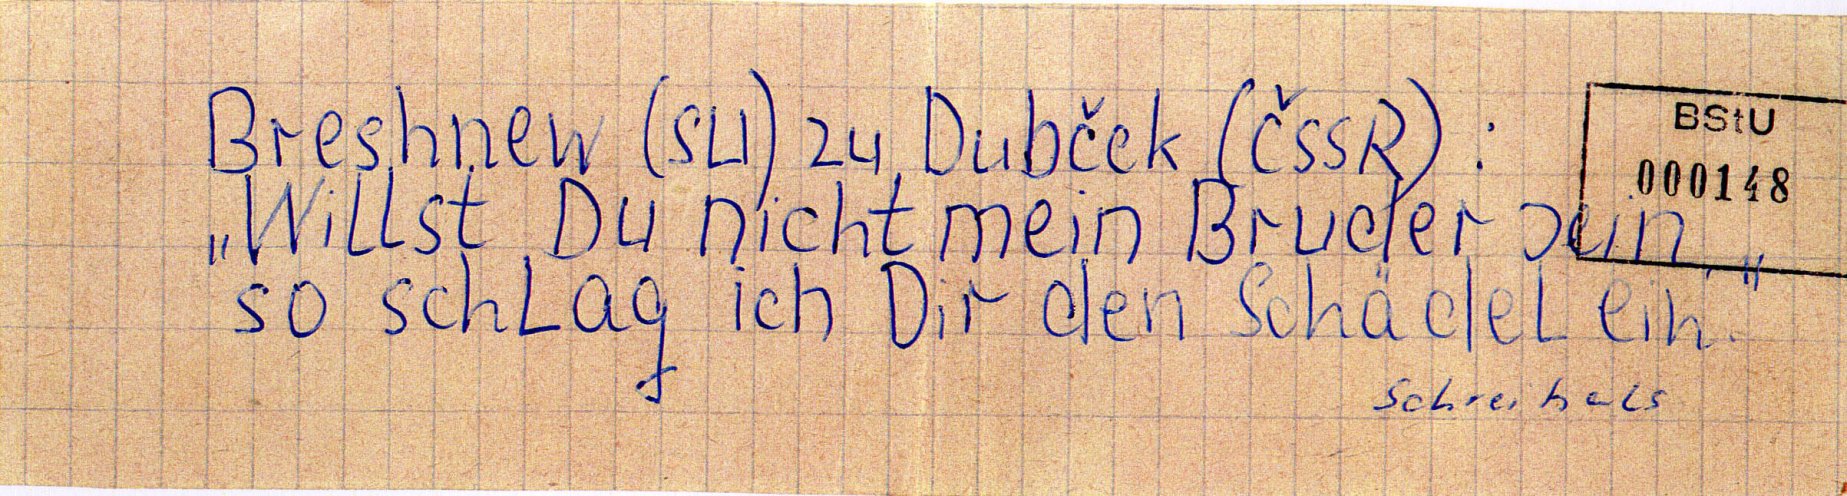 In Schwerin schreibt ein 21-jähriger Flugblätter gegen den Einmarsch der Warschauer-Pakt-Truppen in die CSSR und verteilt diese in Hausbriefkästen in seiner Wohngegend. Quelle: BStU, MfS, BV Schwerin, AU 11/69, GA Bd. 3, Bl. 148, Seite 2 von 10